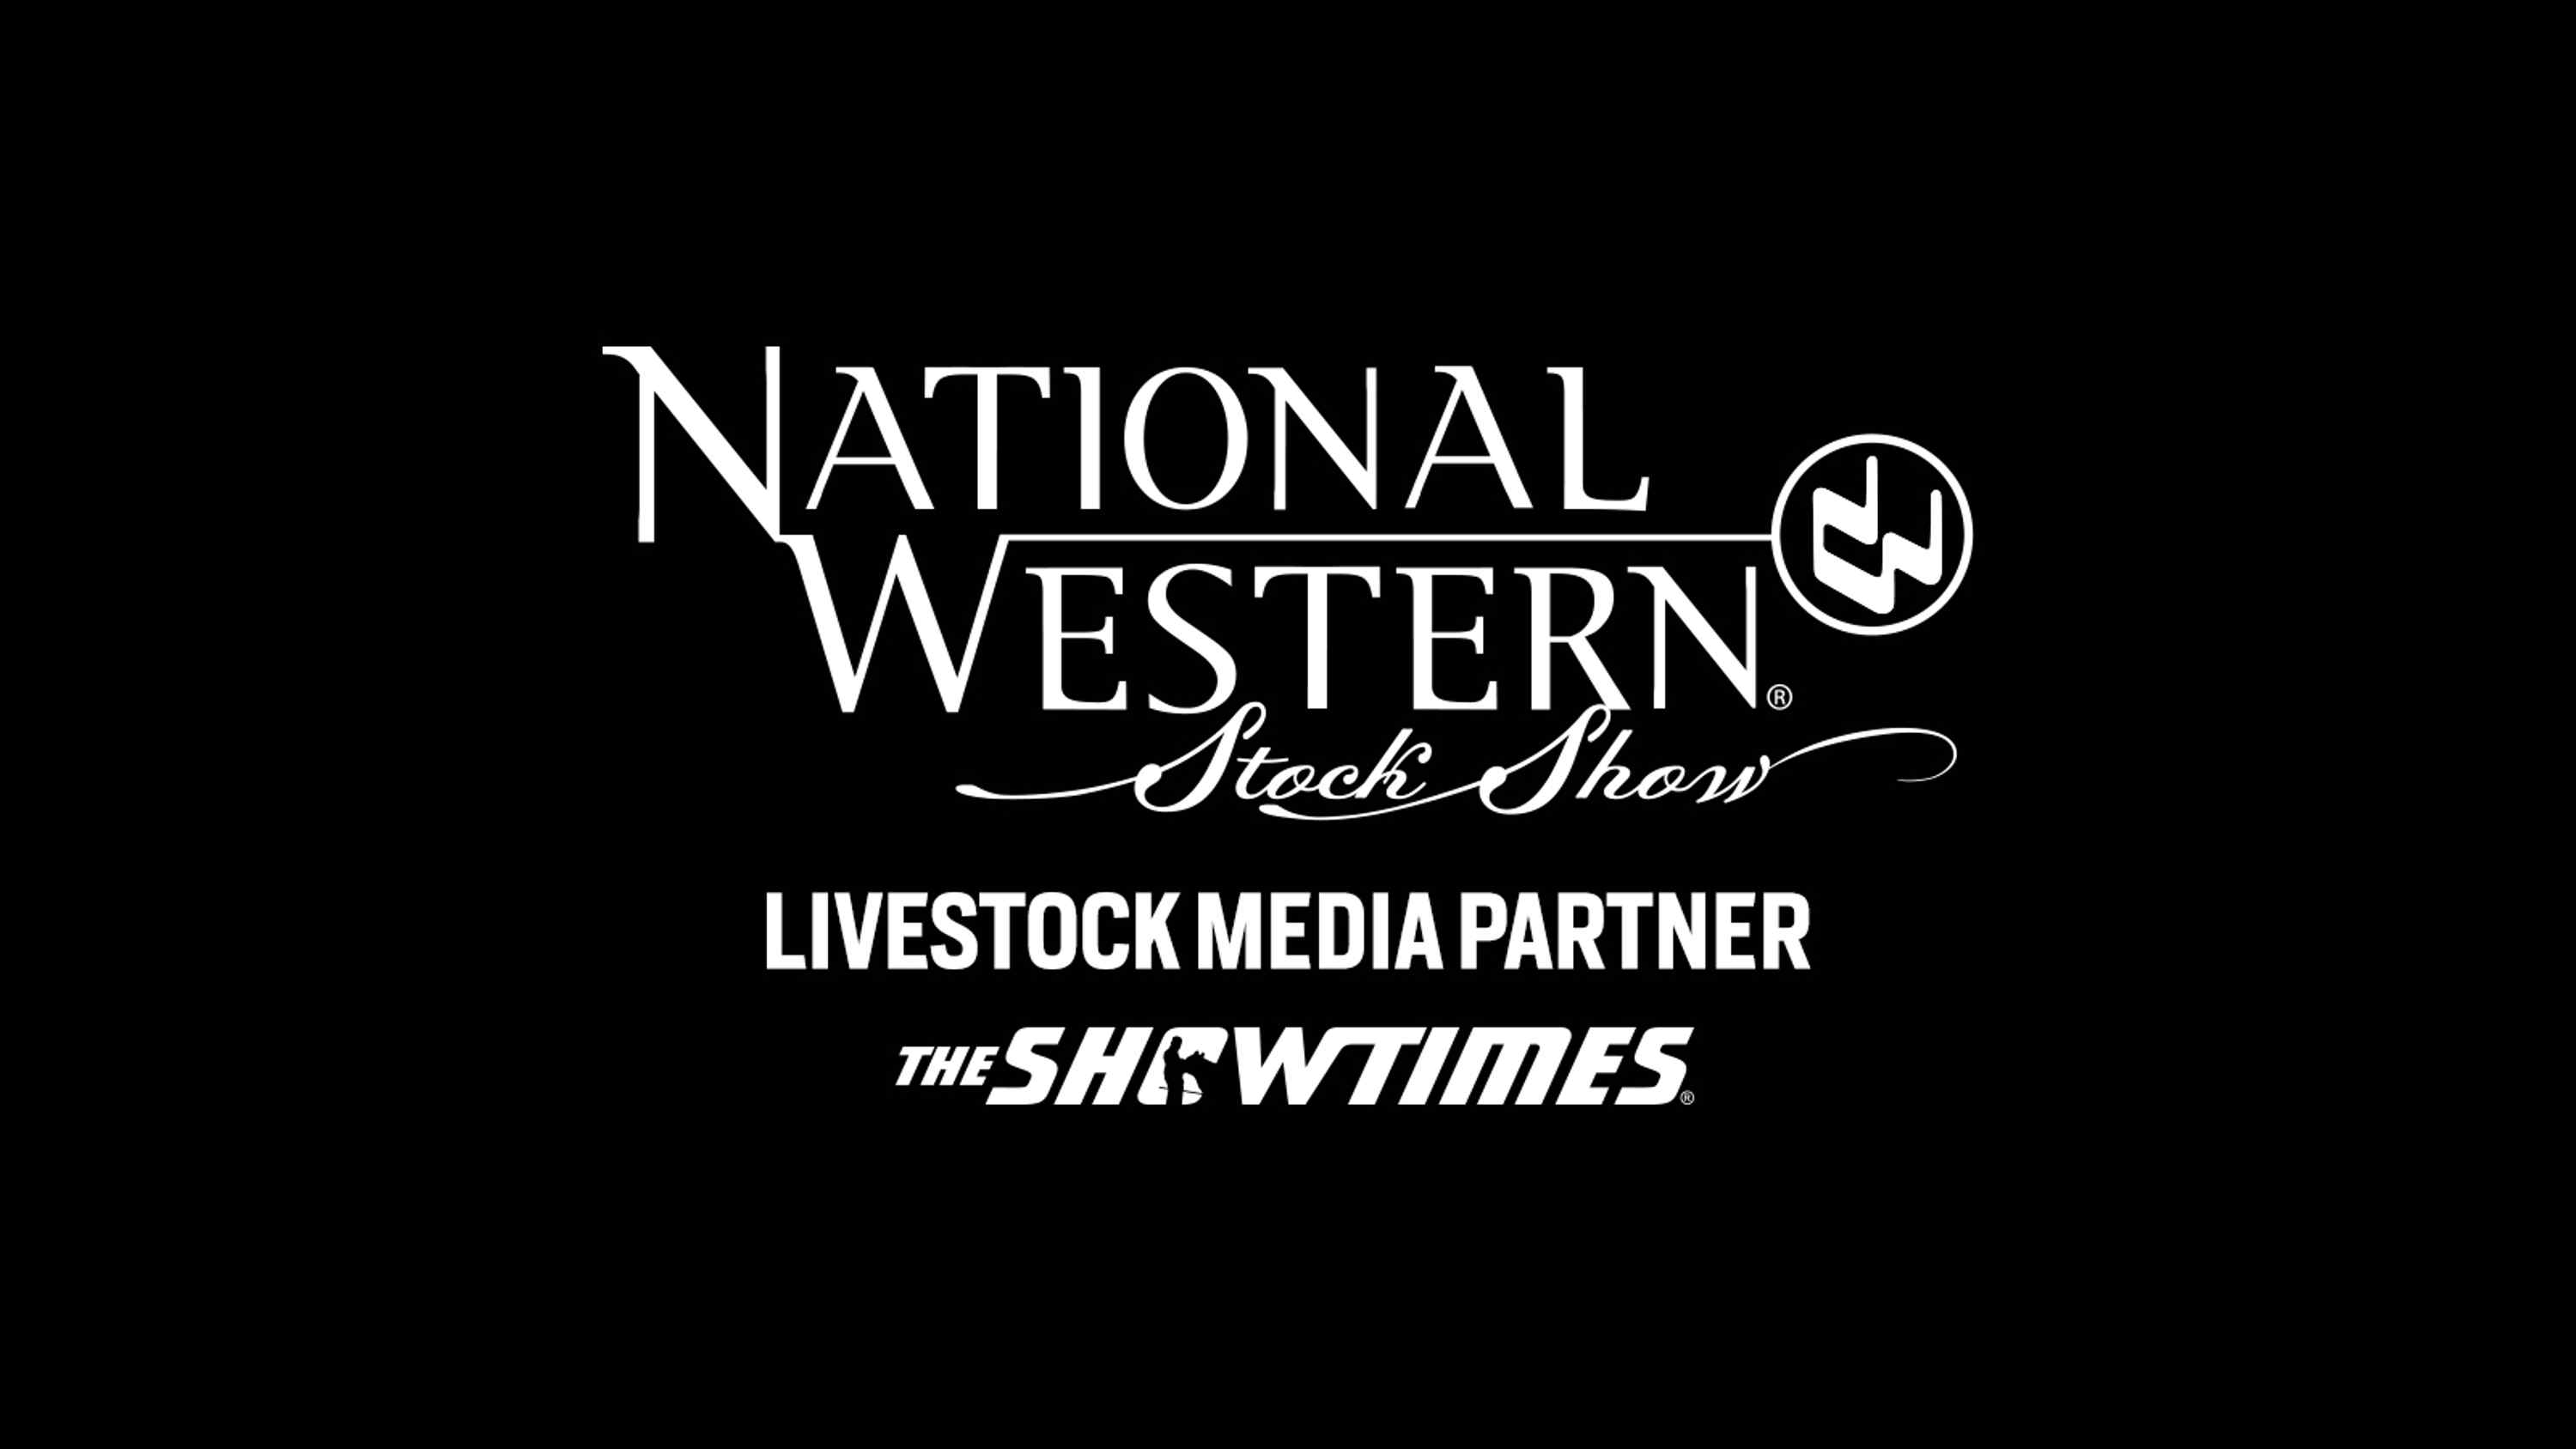 NWSS Livestock Media Partner